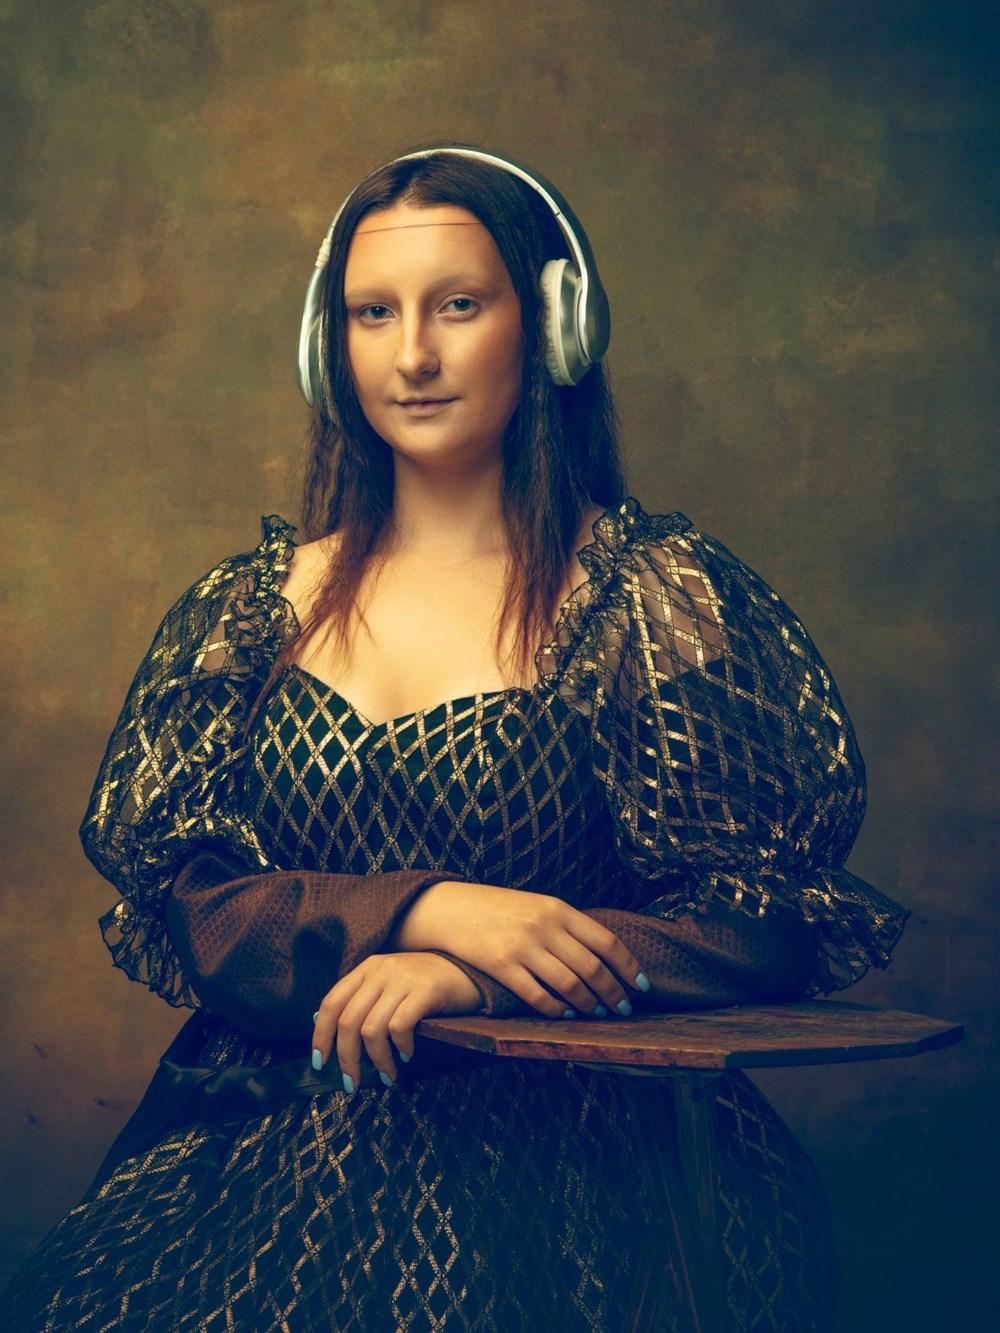 Mona Lisa tablosu hakkında bilmeniz gereken 15 bilgi - 12